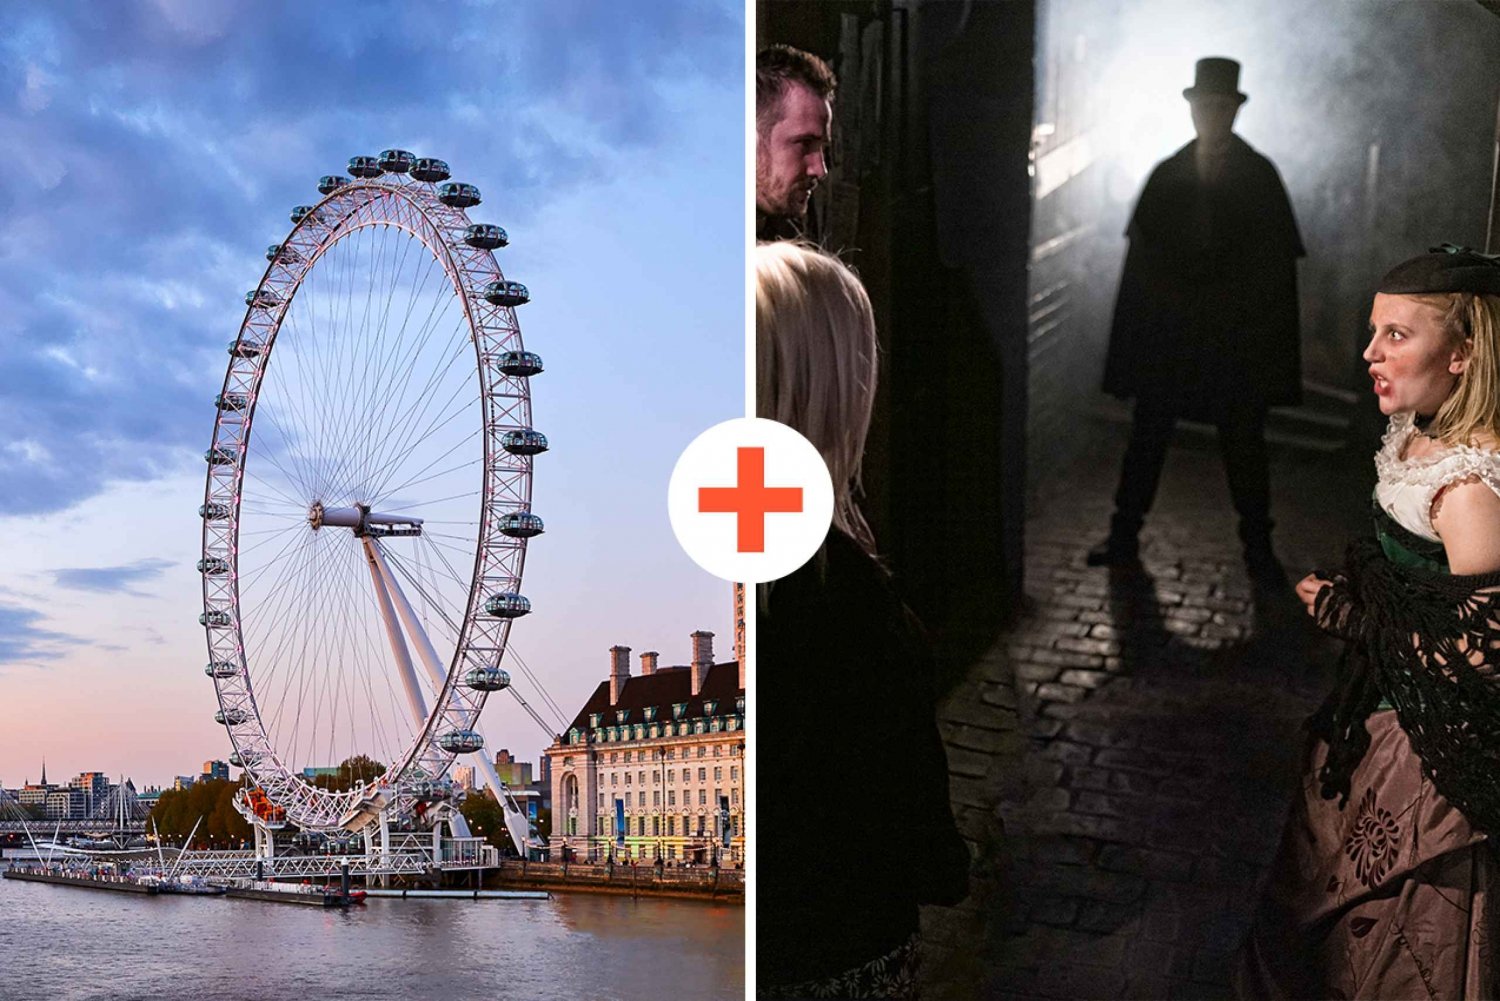 Londres: Ingresso combinado para o London Dungeon e o London Eye